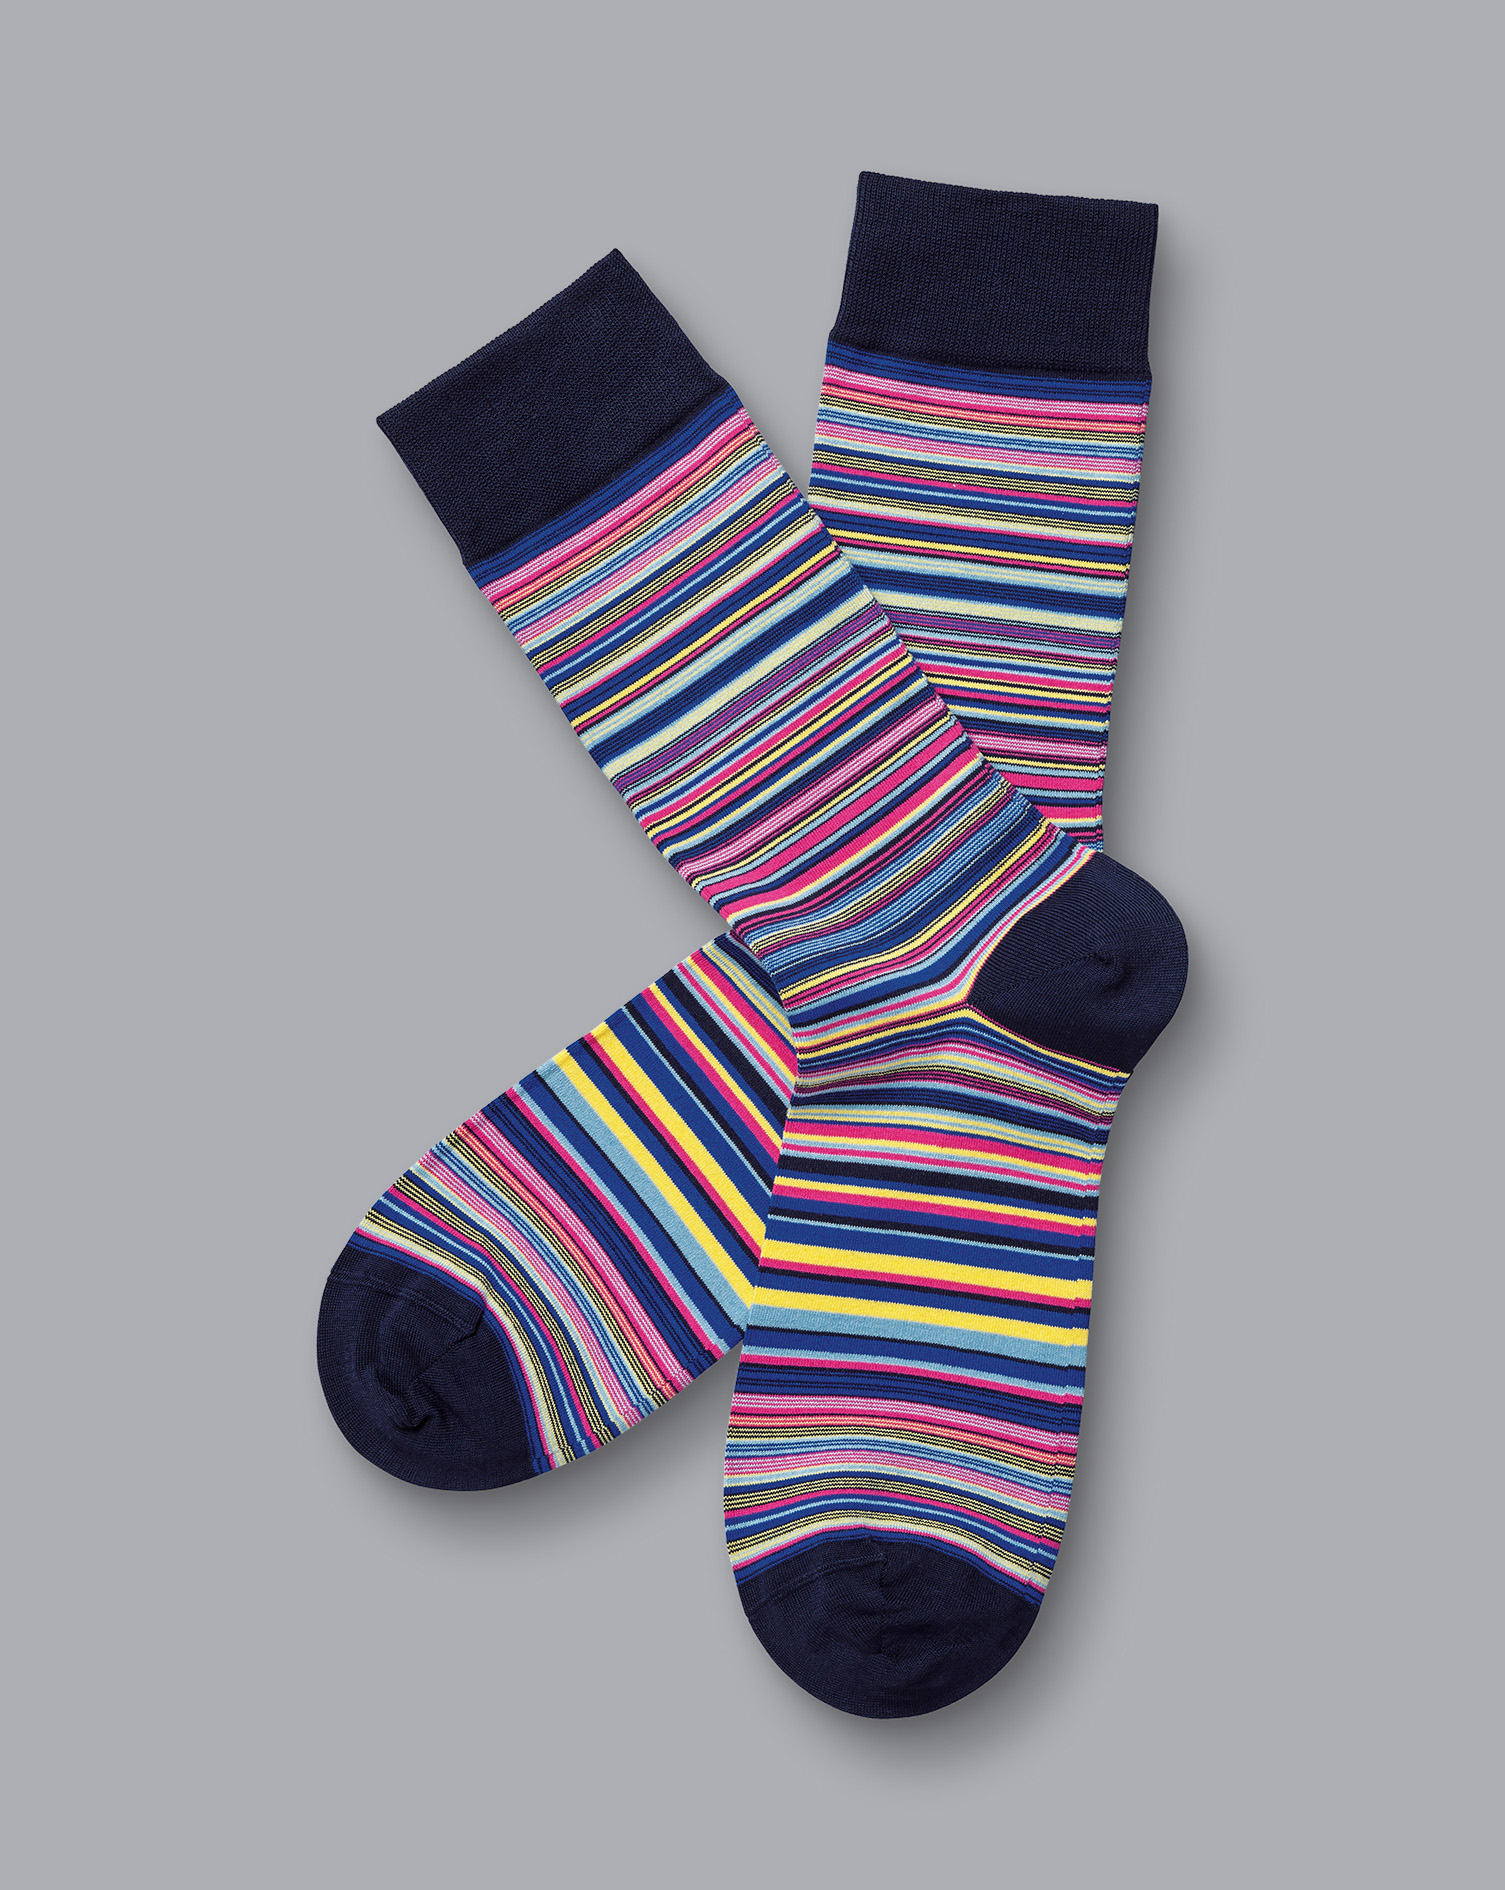 Men's Charles Tyrwhitt Multi Stripe Socks - Bright Pink & Cobalt Blue Size 6-10 Cotton
